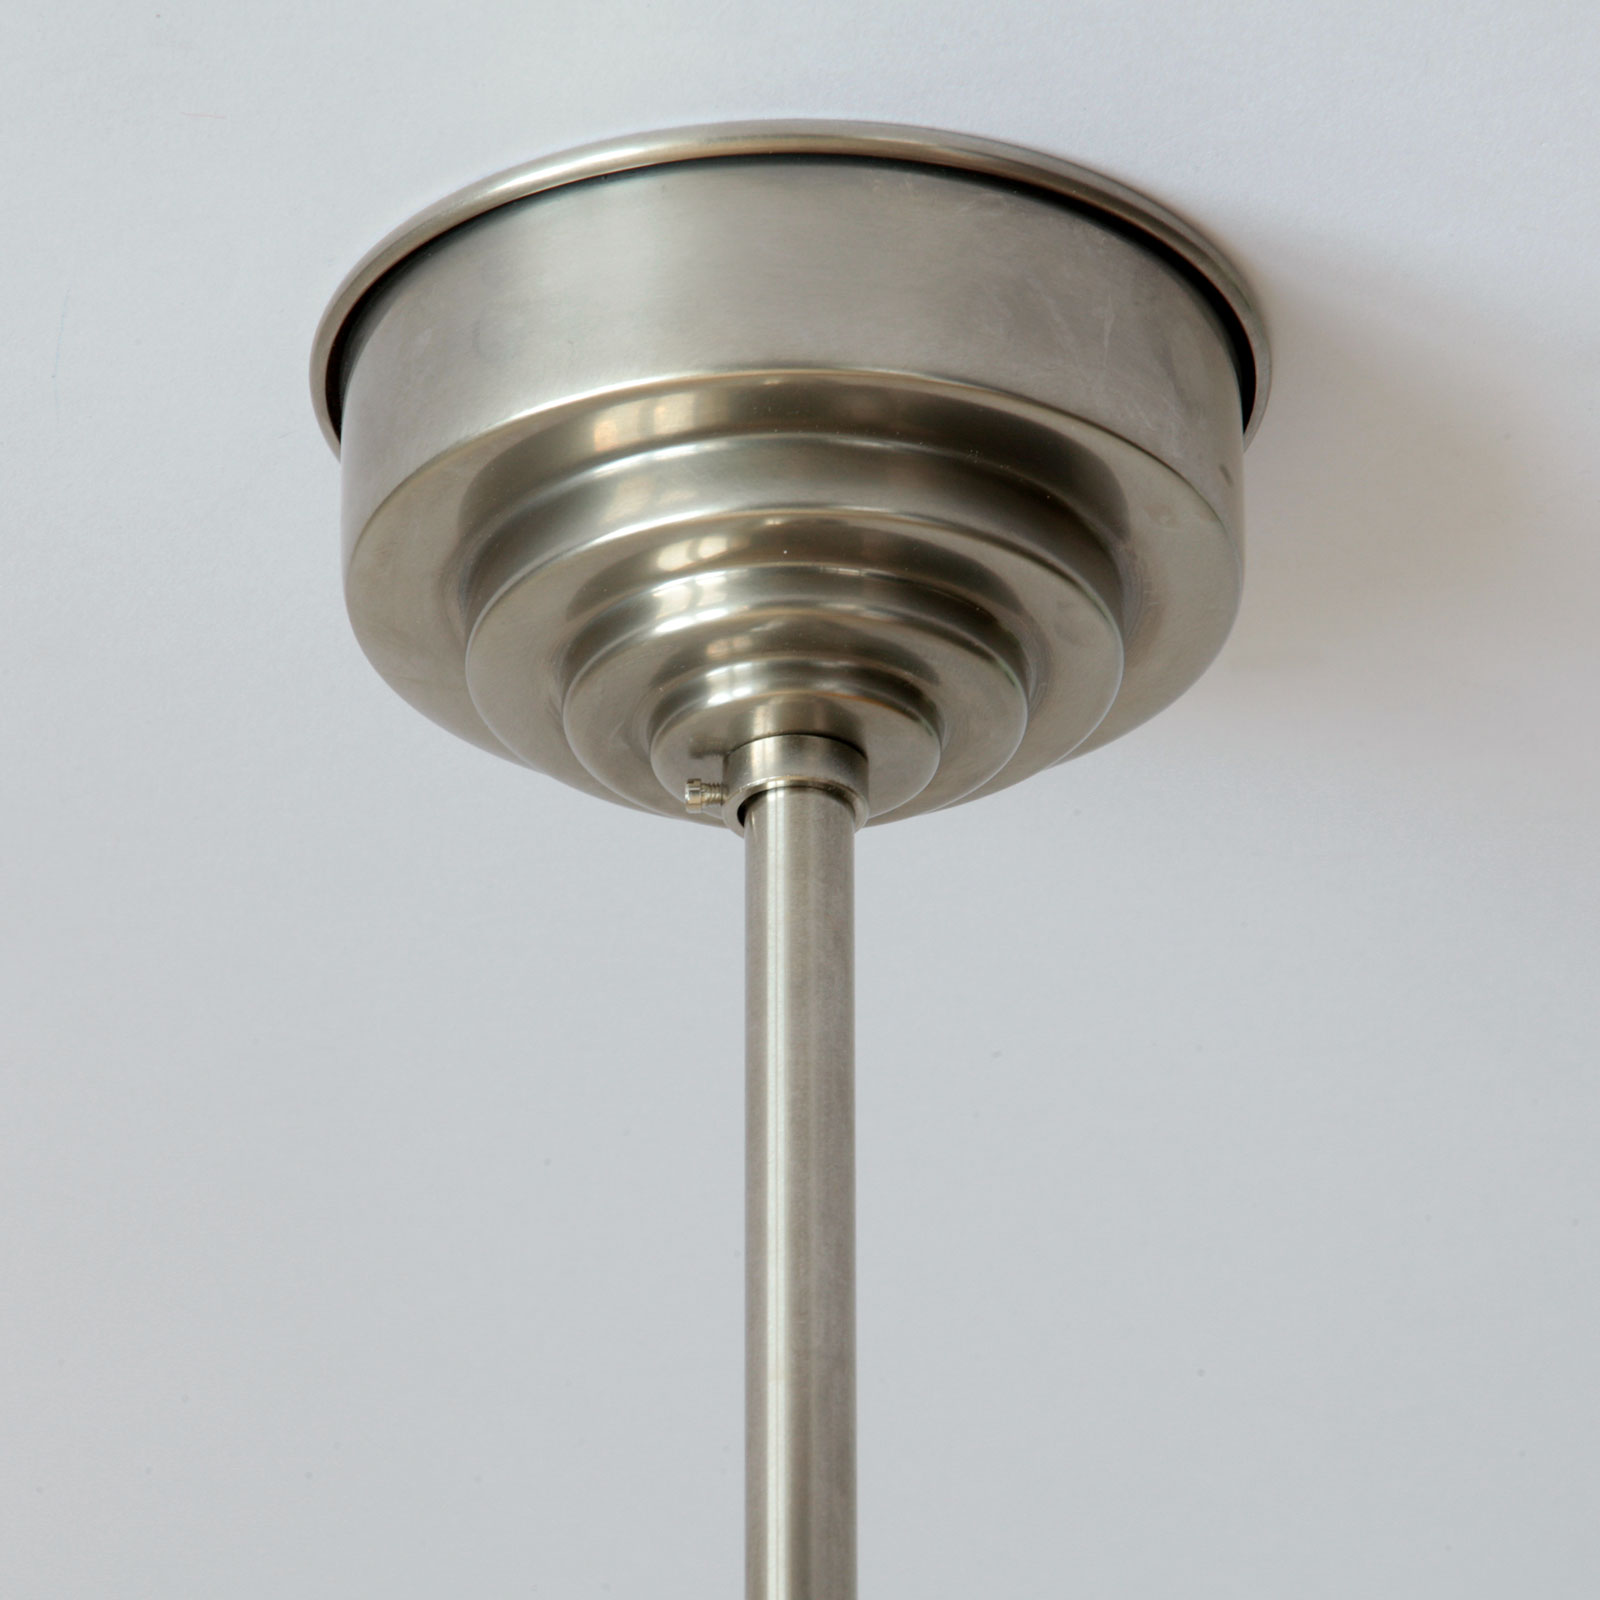 Stableuchte mit schlankem gestuften Opal-Zylinderglas: Der Baldachin (Ø 11 cm), hier in Messing matt vernickelt